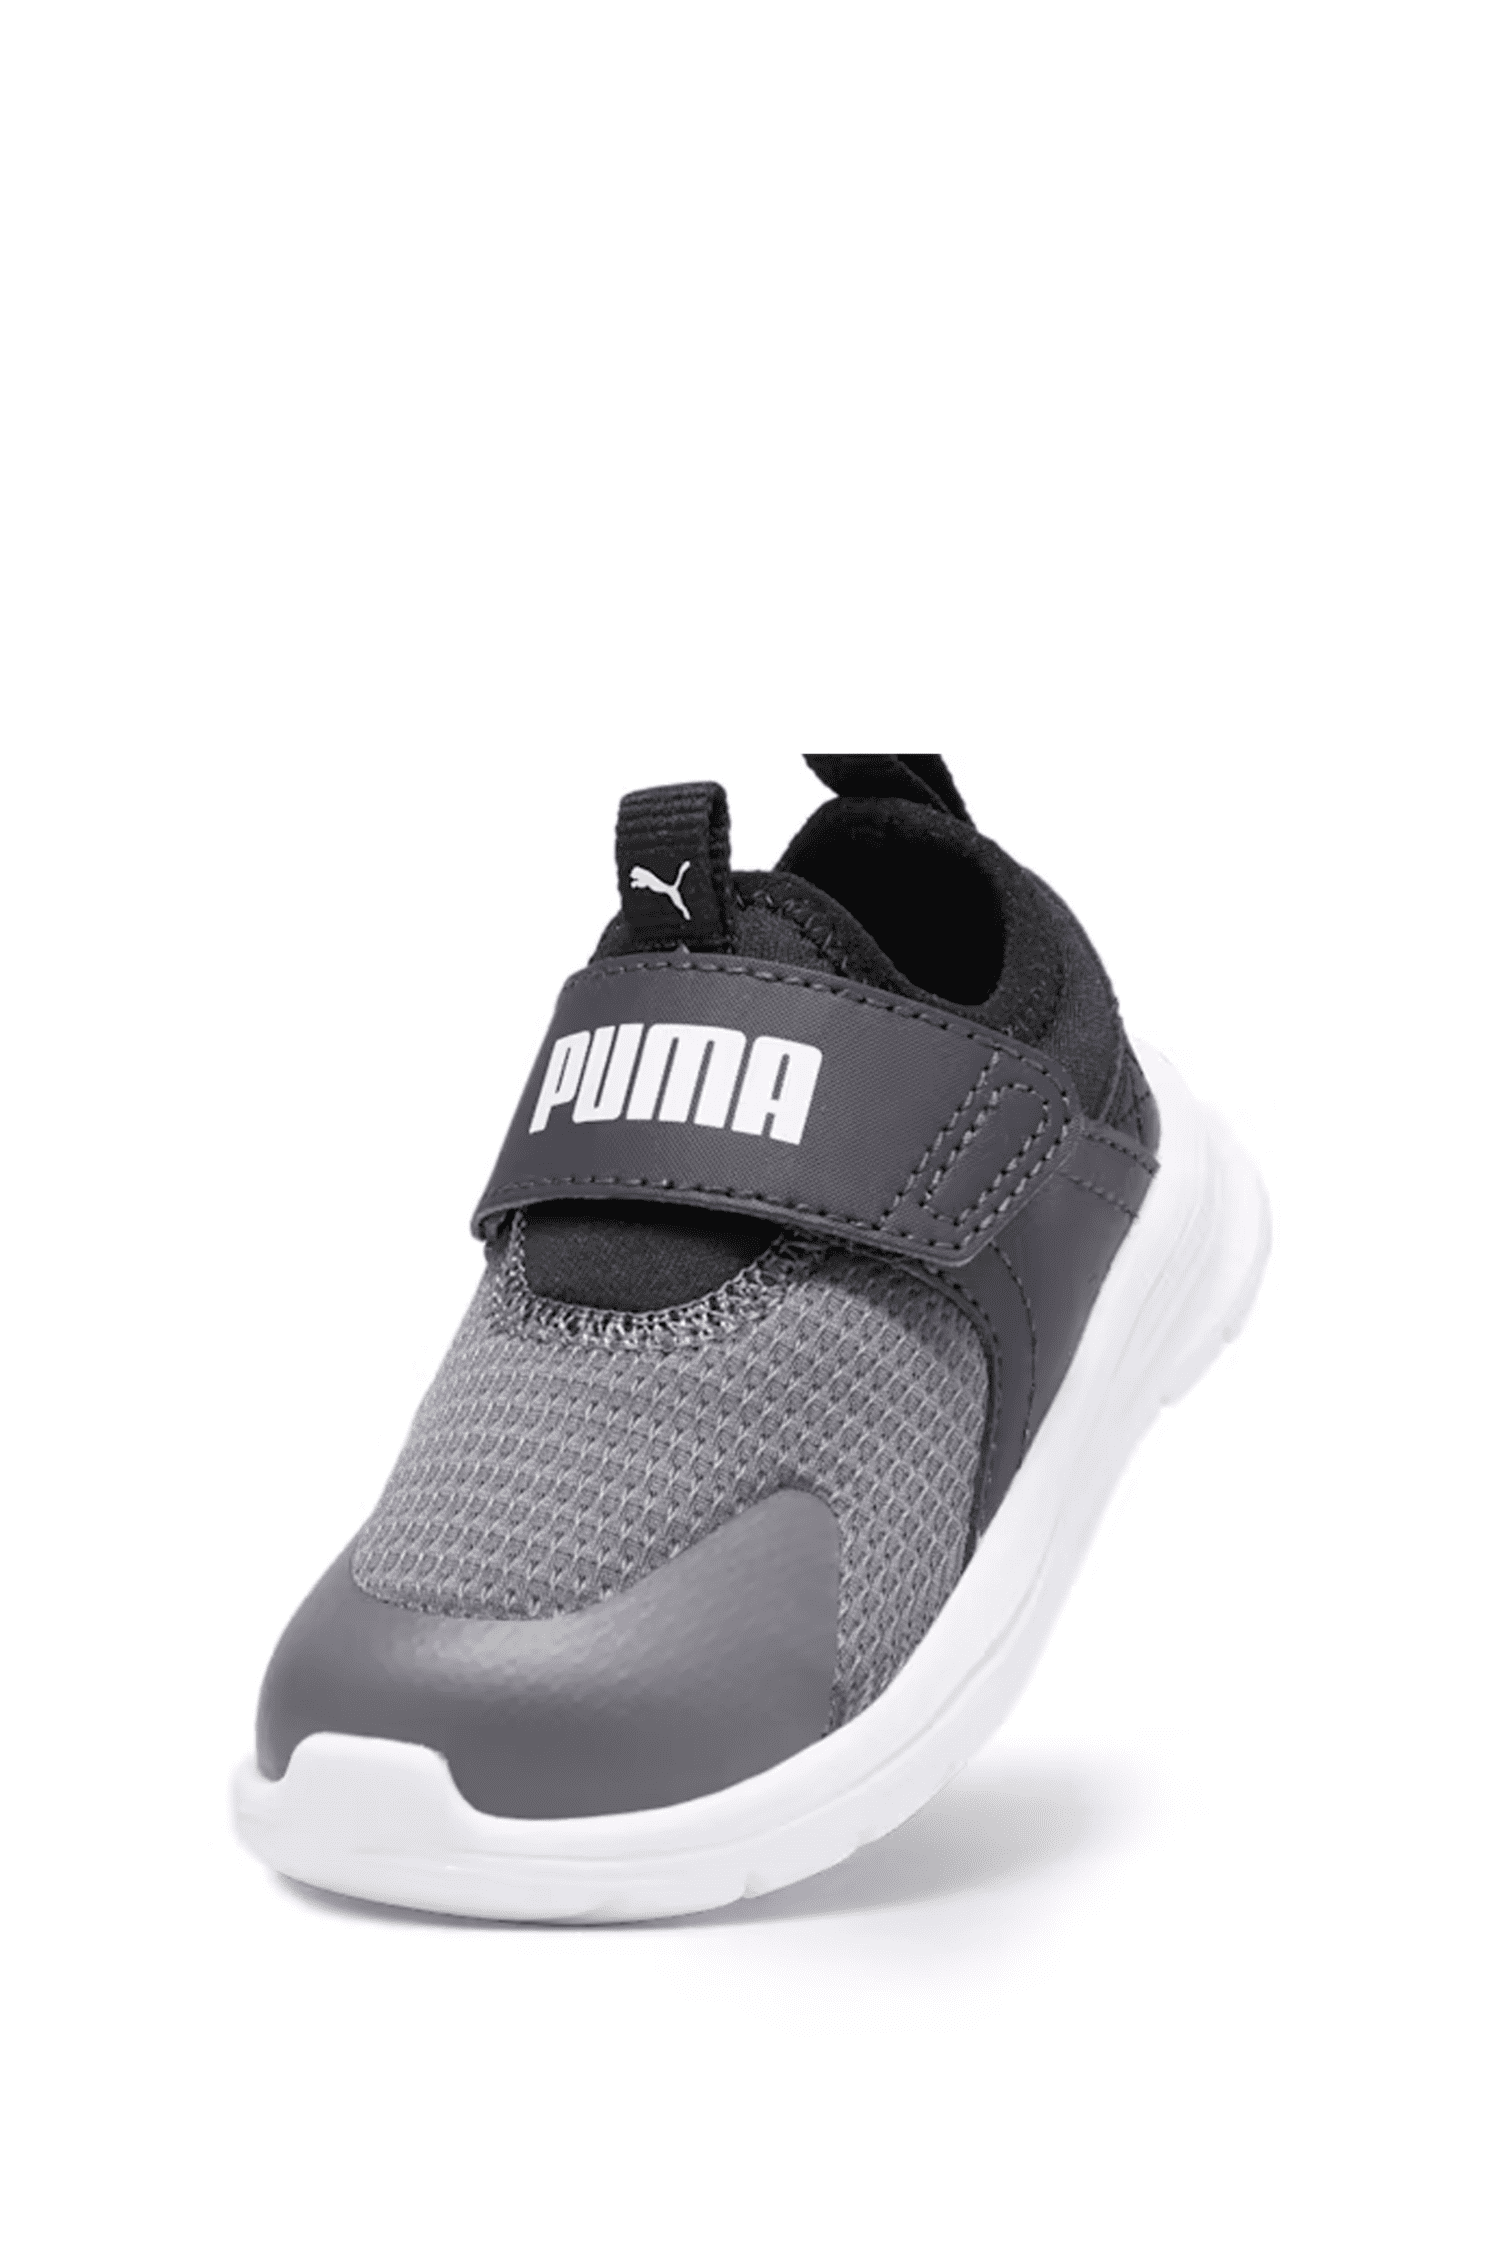 נעלי פומה תינוקות Puma Evolve Slip On Inf בצבע שחור-Puma-20-נאקו